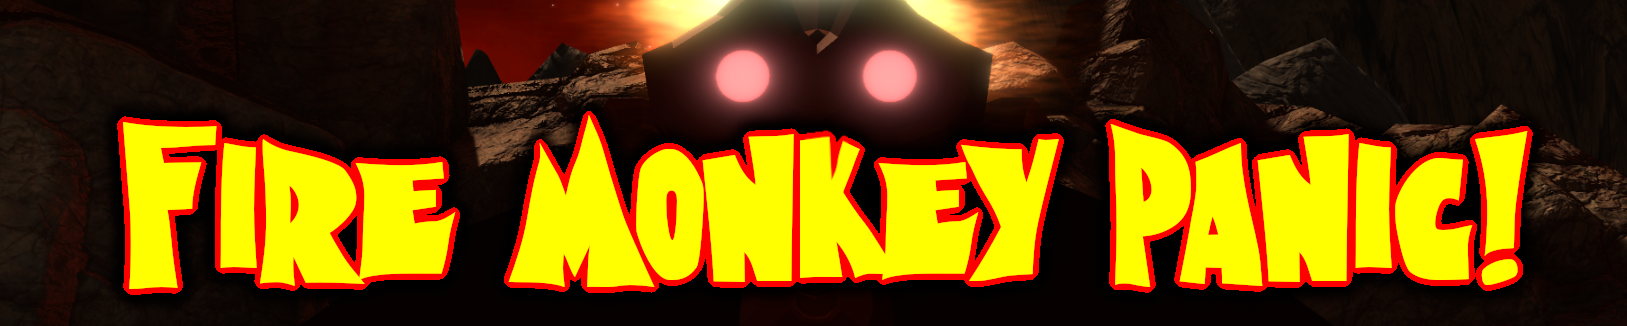 Fire Monkey Panic